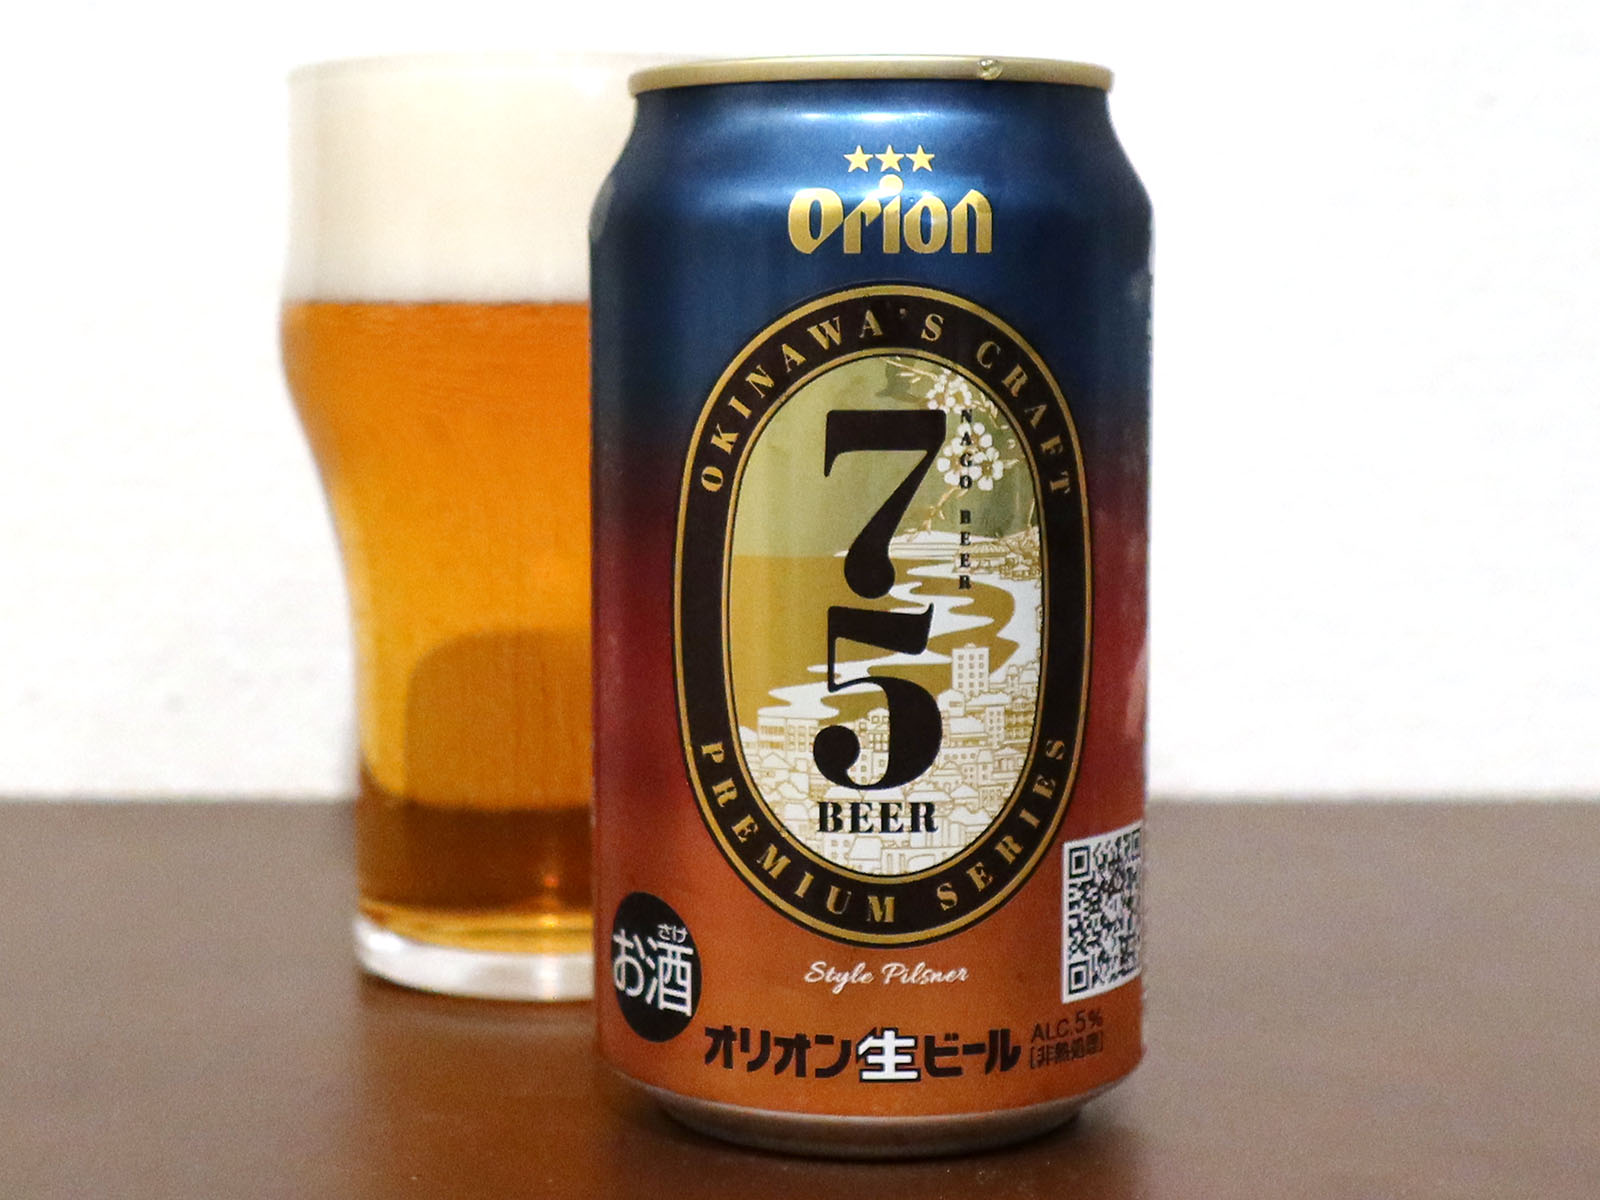 オリオンビール 75beer ナゴビール 生ビールブログ